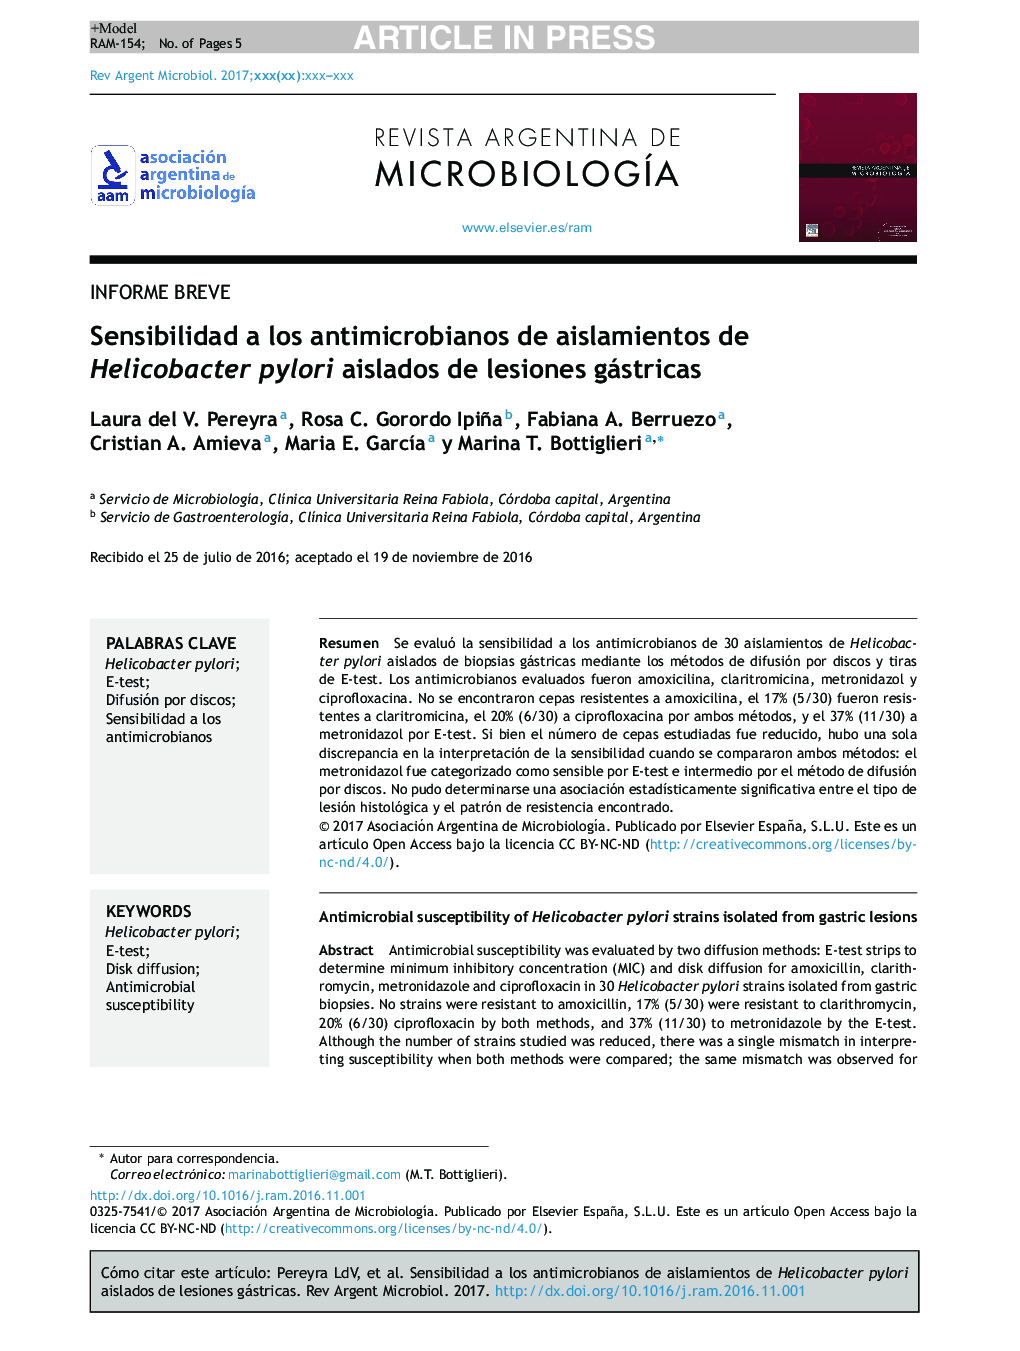 Sensibilidad a los antimicrobianos de aislamientos de Helicobacter pylori aislados de lesiones gástricas